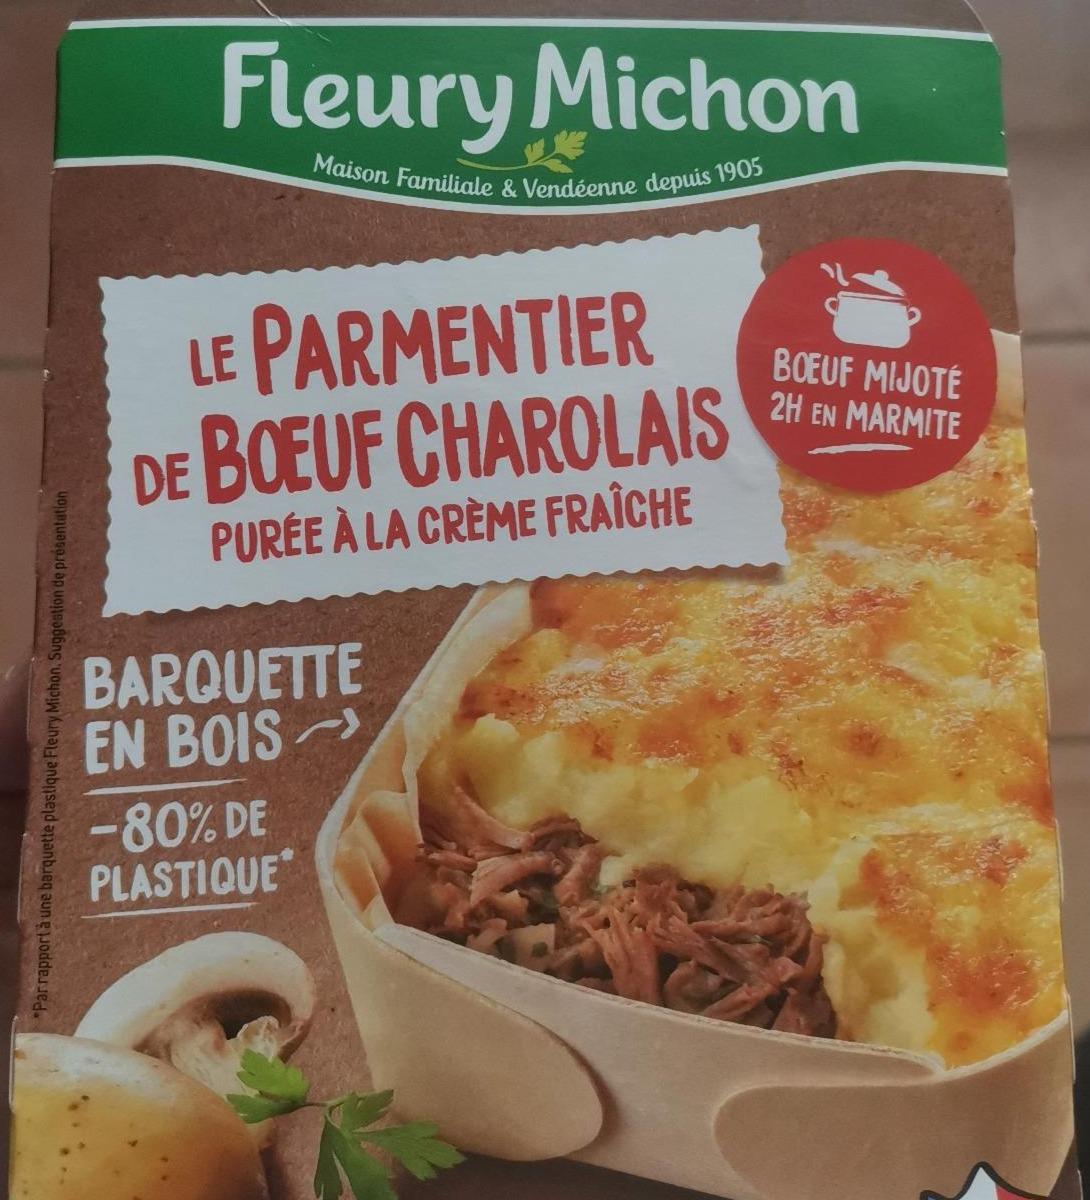 Fotografie - Le Parmentier de Boeuf Charolais purée à la crème fraîche Fleury Michon